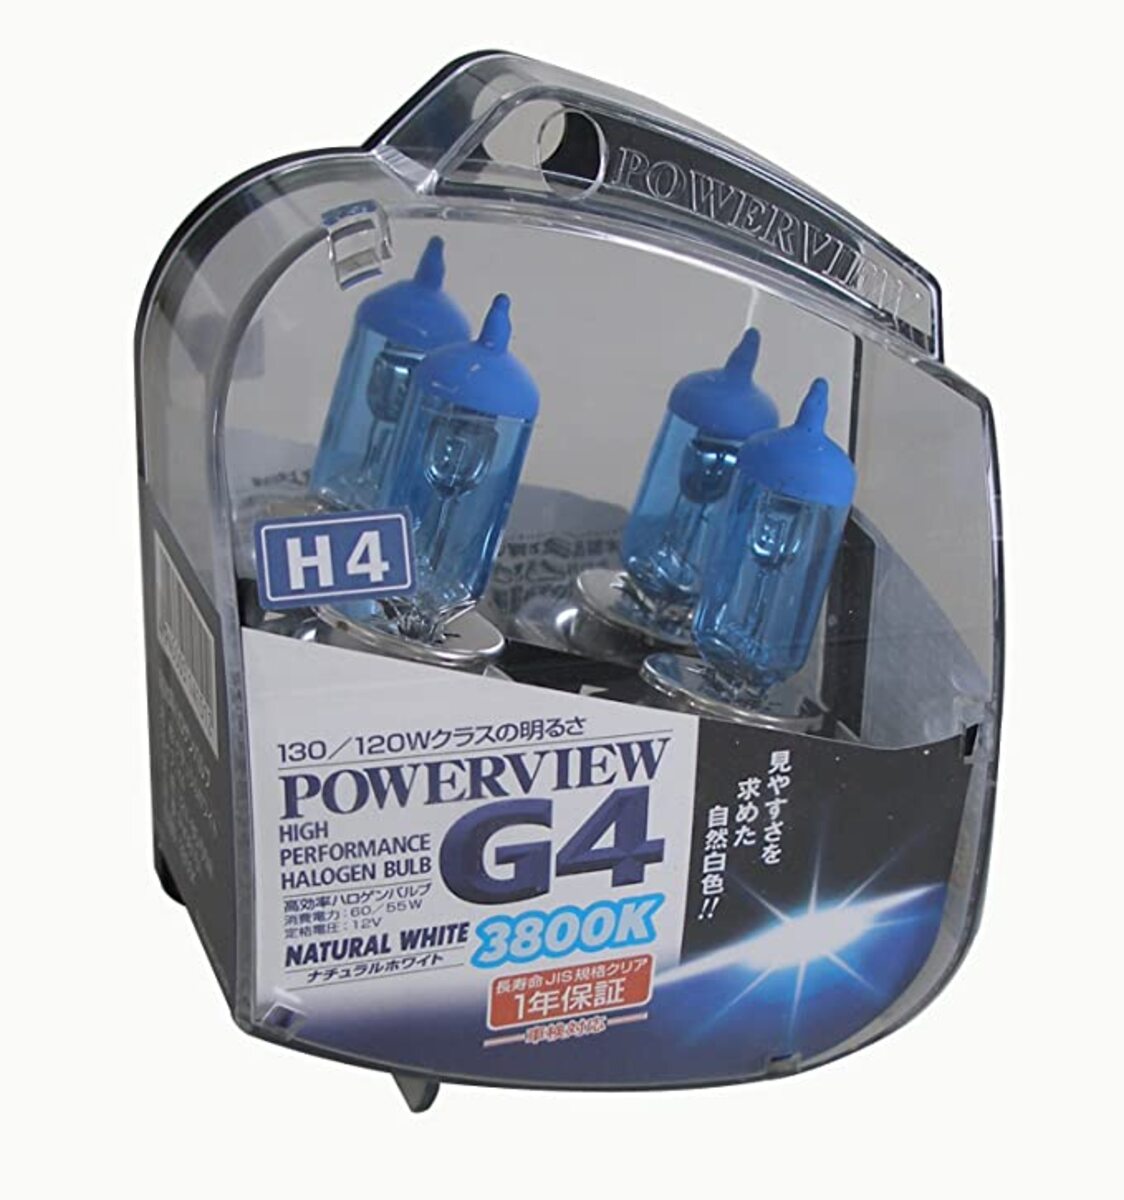 PowerView G4 ナチュラルホワイト PV08151 130/120Wクラスの明るさ 商品電力 60/55W 車検対応 ライト ハロゲンバルブ